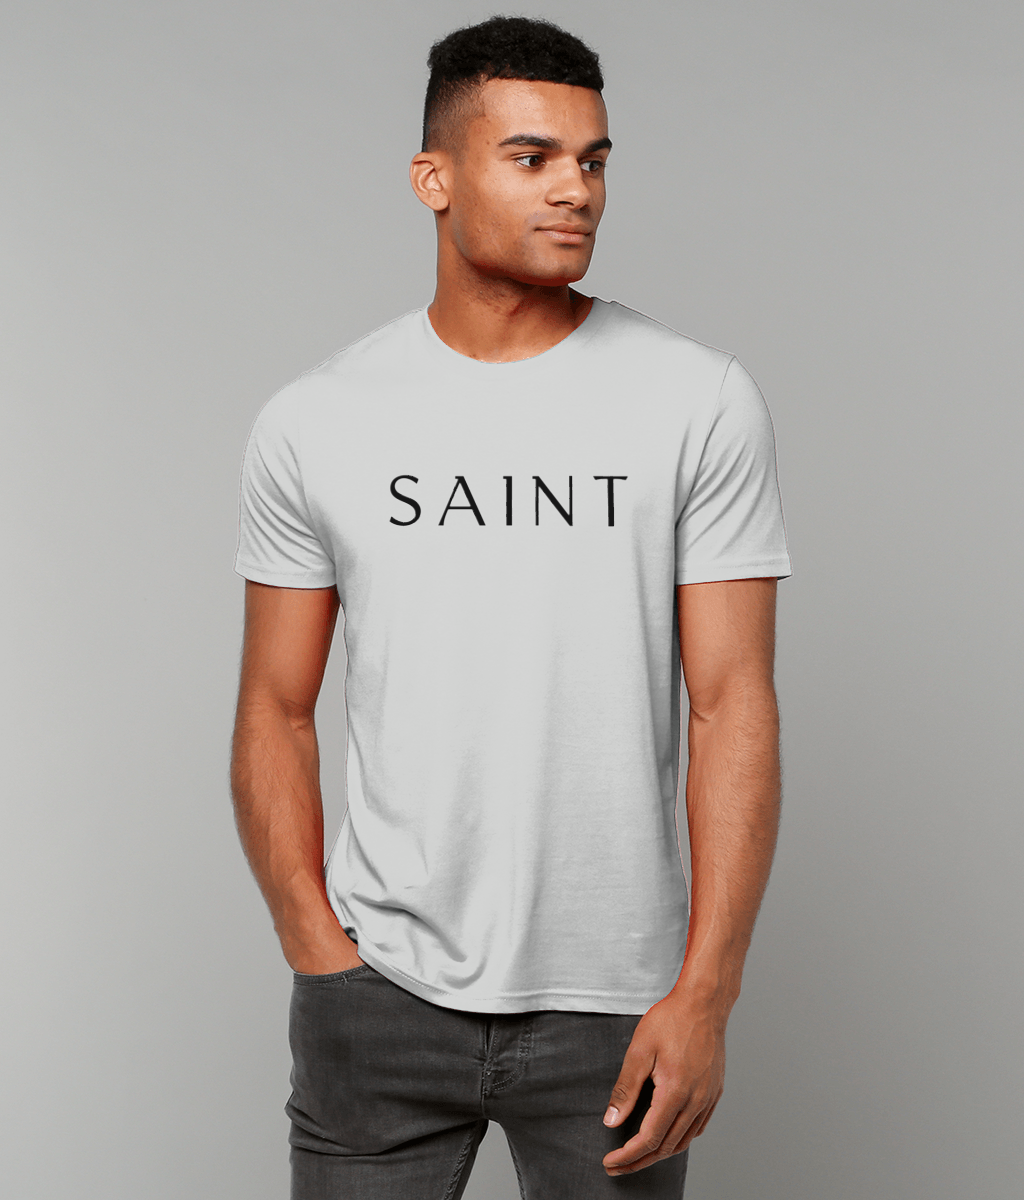 T-shirt for Saints